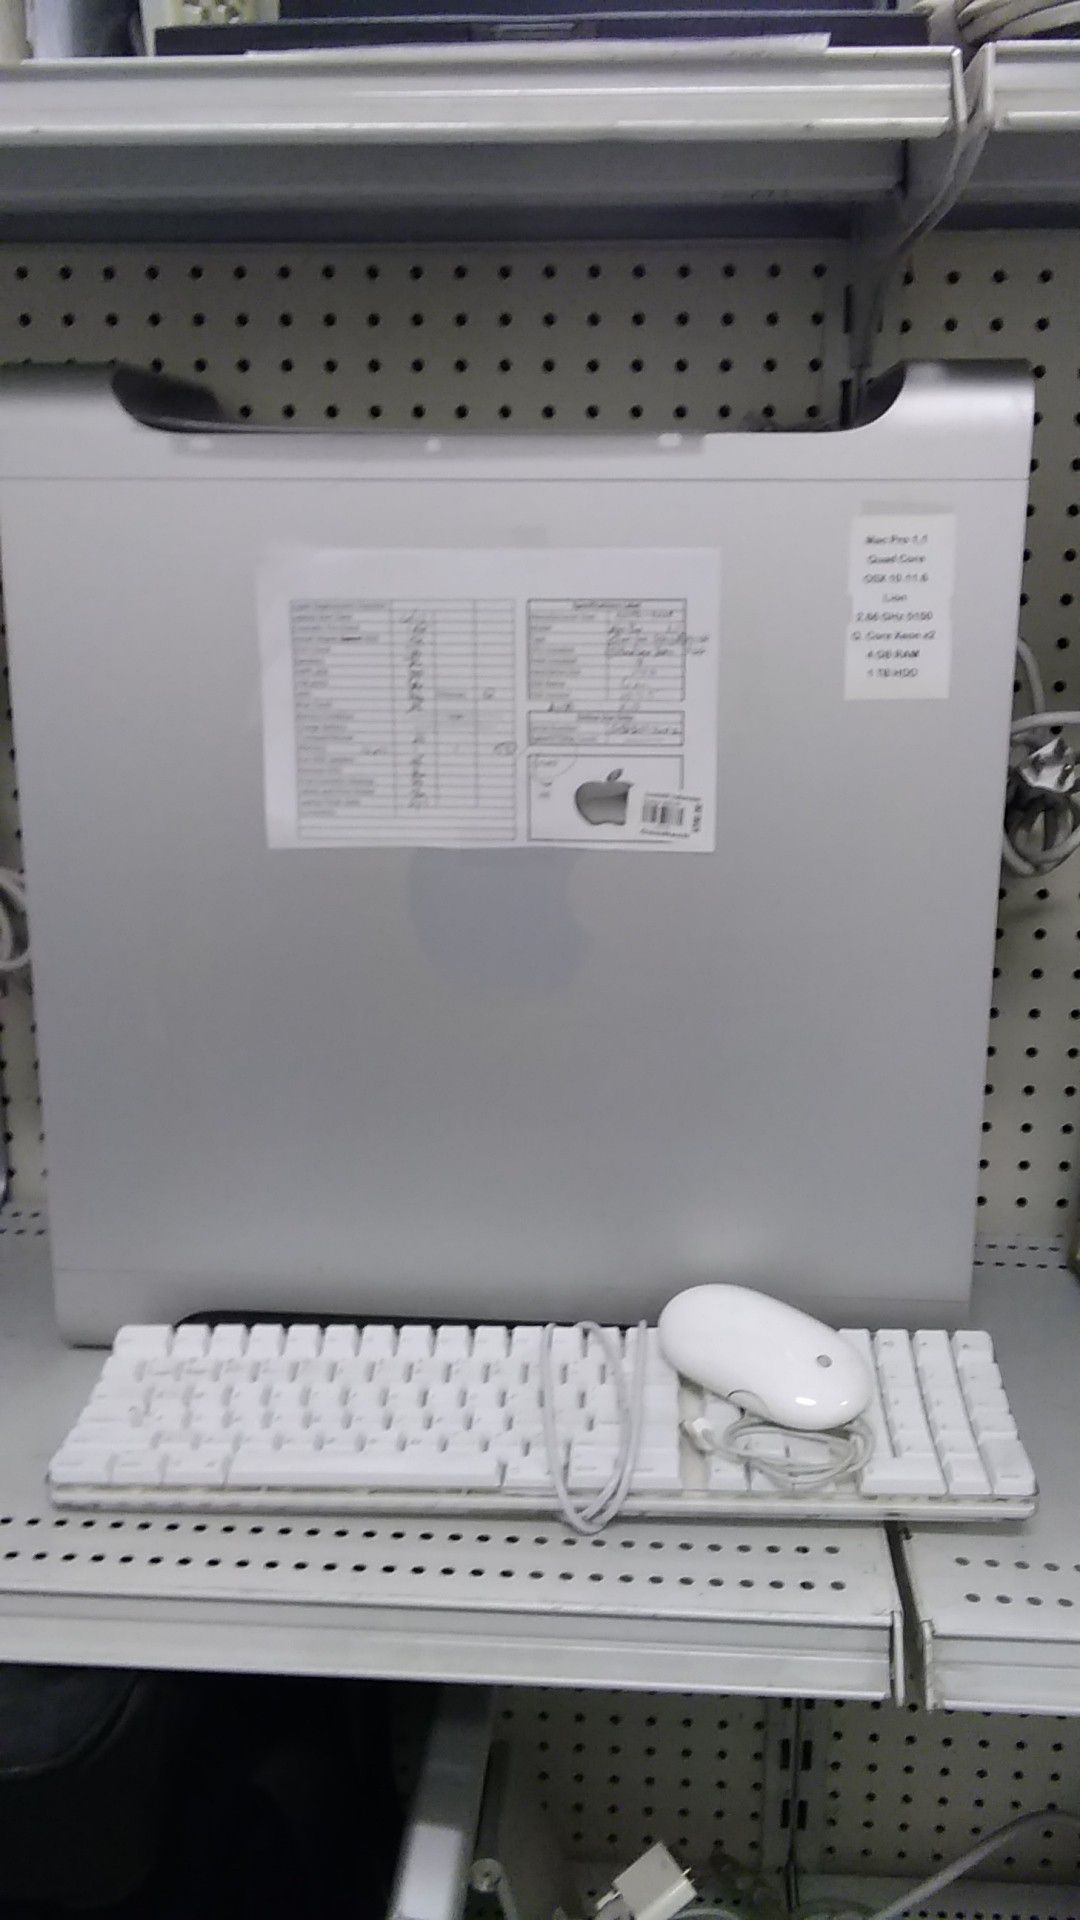 Apple Mac Pro 1,1